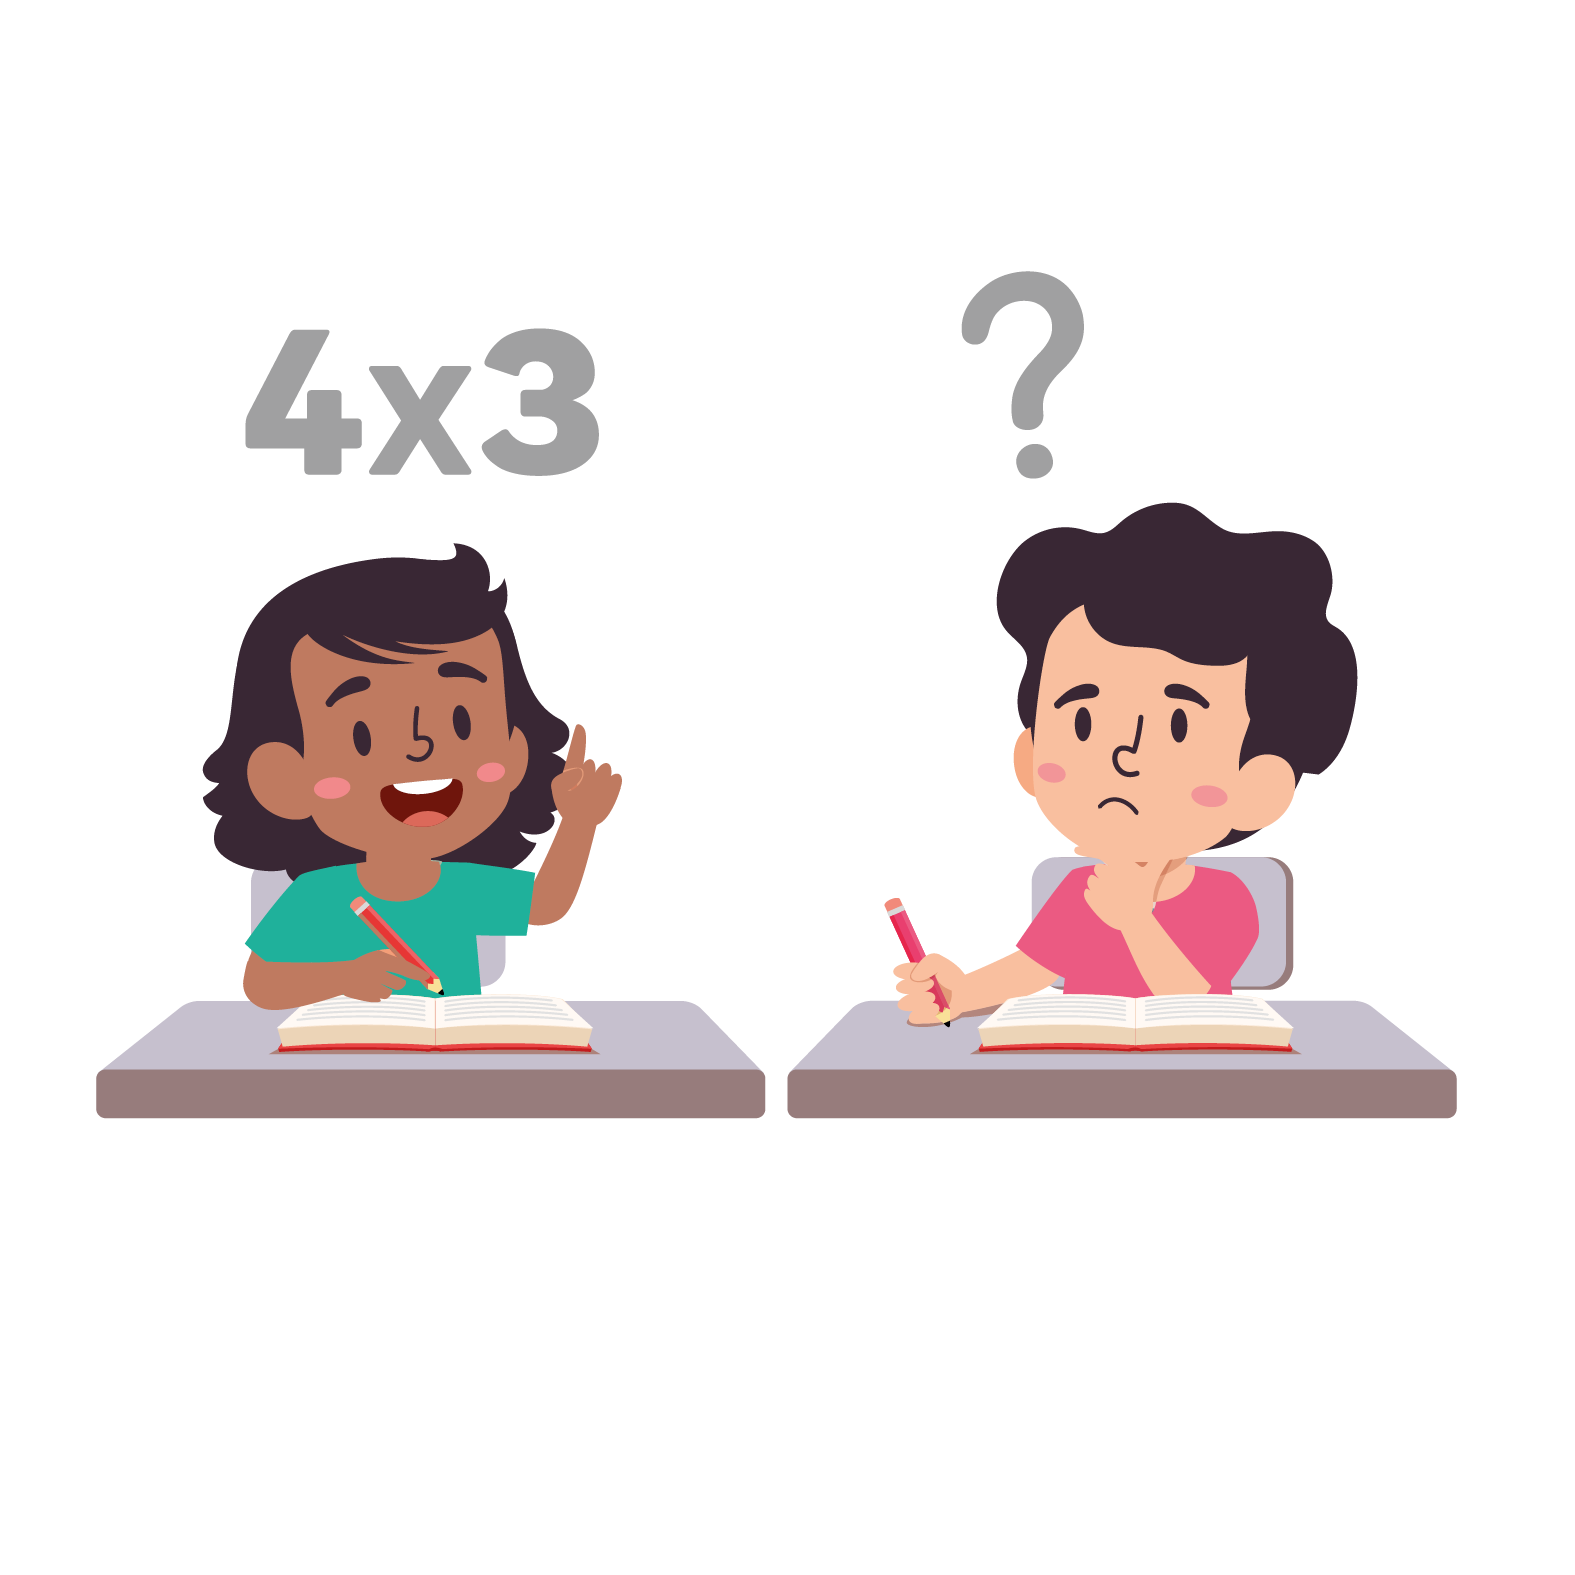 La imagen muestra un niño pensando sobre la solución de una multiplicación